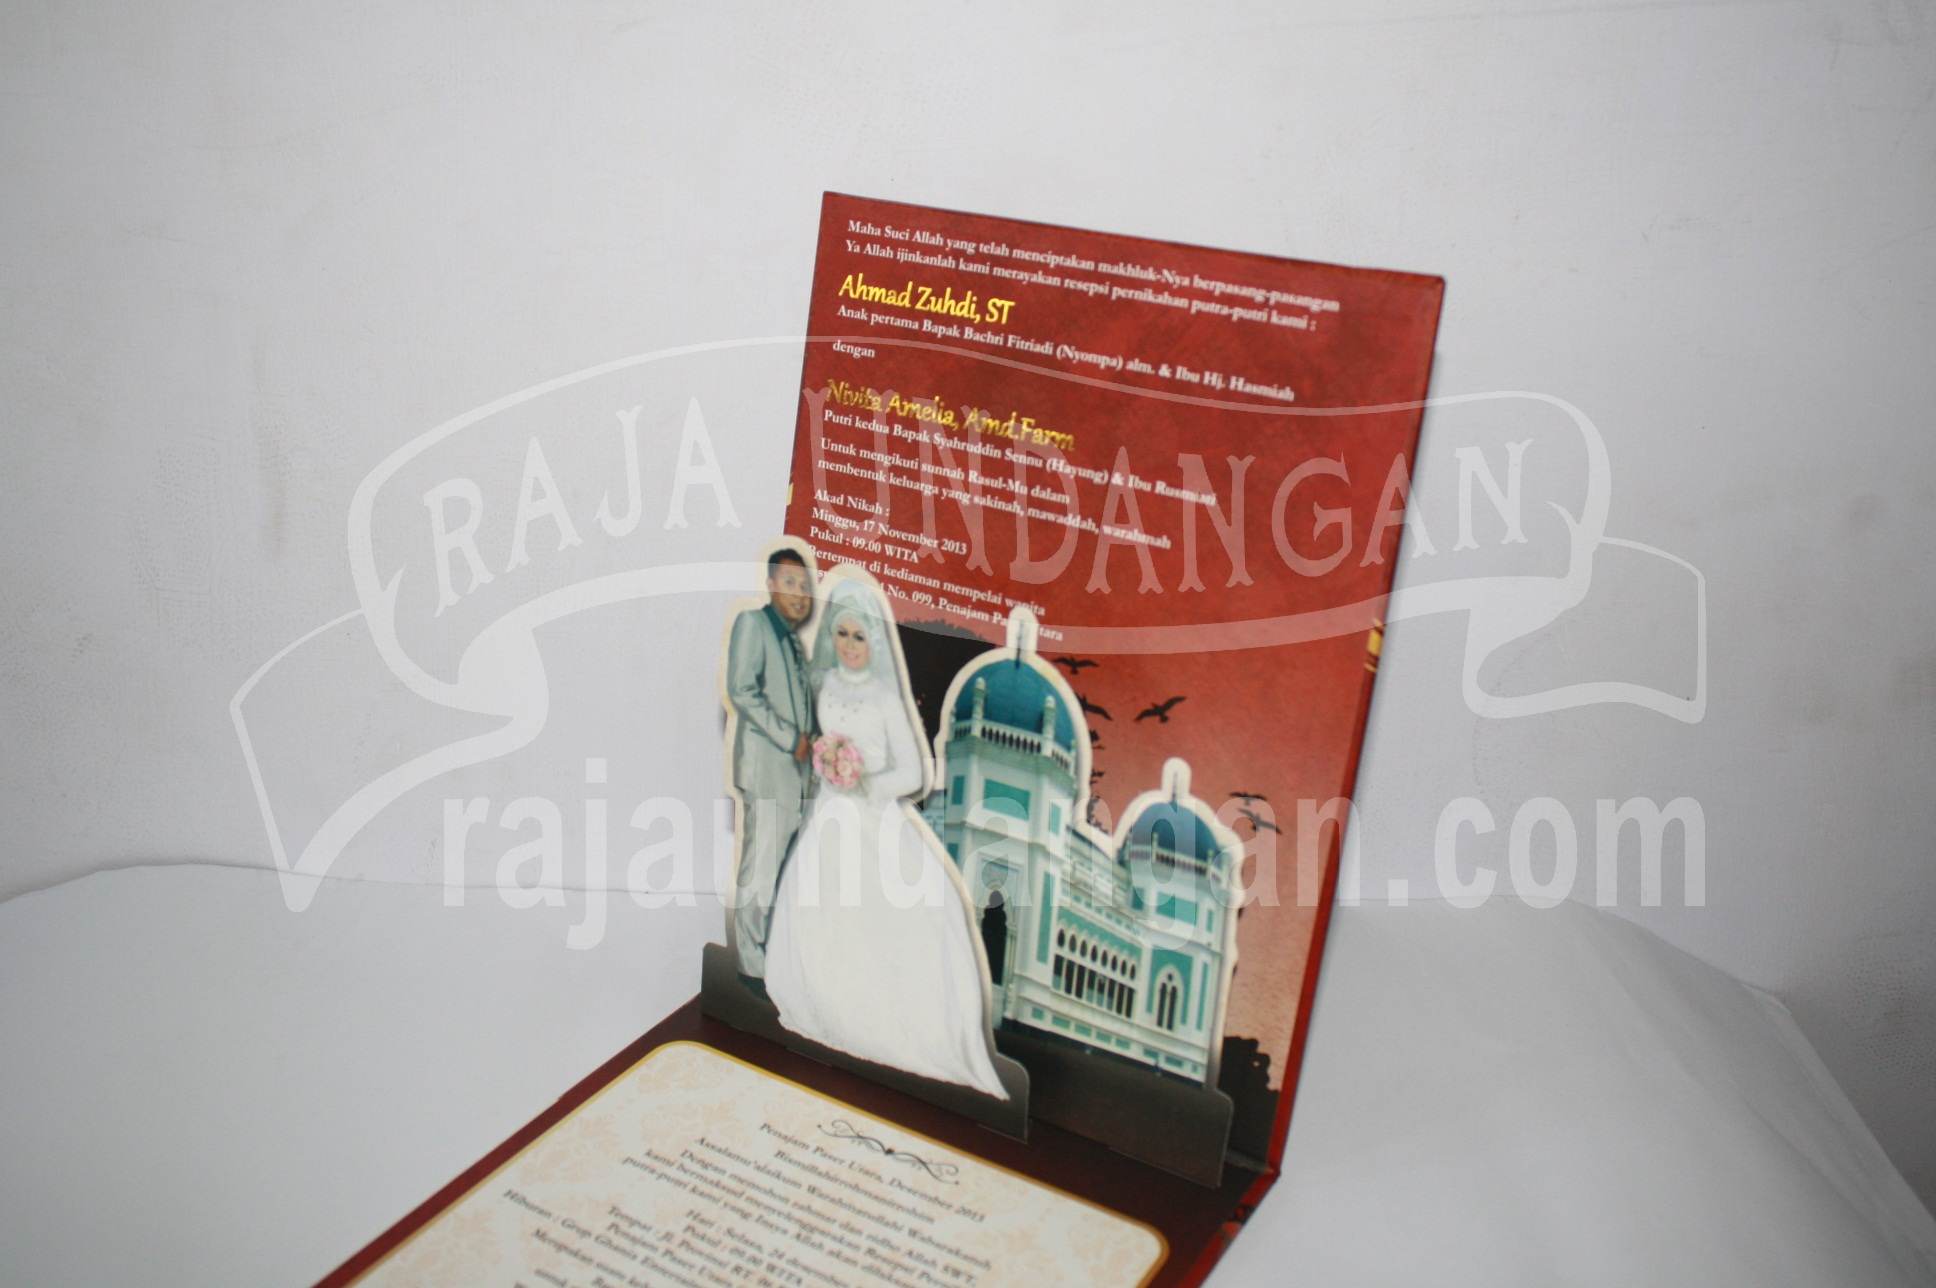 Undangan Pernikahan Hardcover Pop Up Pakai Amplop Yudi dan Vita EDC 44 3 - Percetakan Wedding Invitations Unik dan Murah Siap Kirim ke Seluruh Wilayah di Indonesia